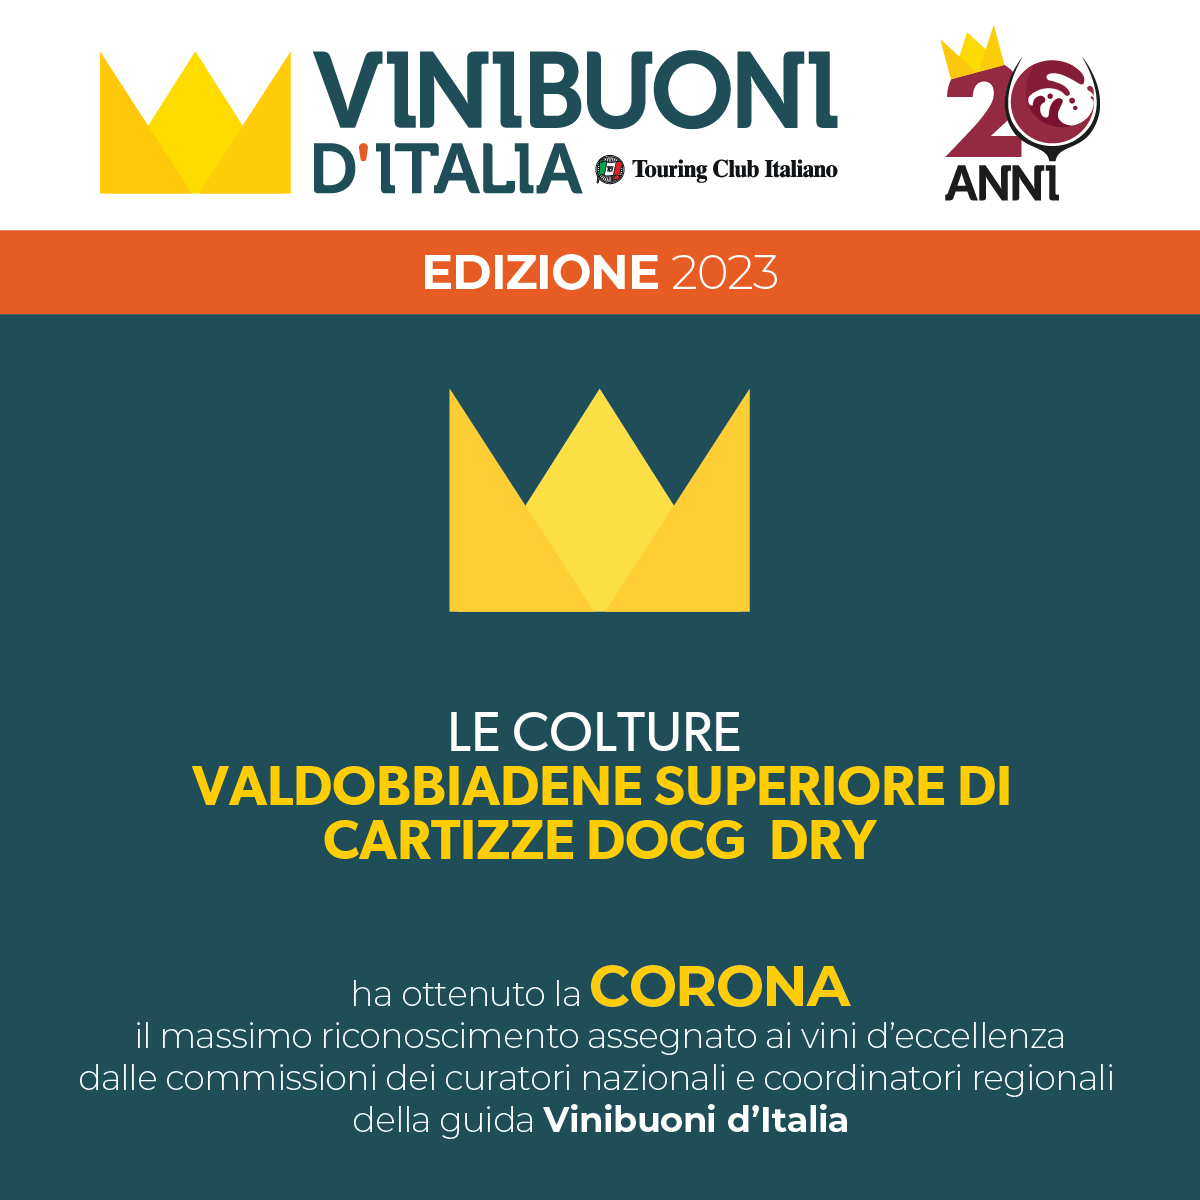 Vinibuoni d'Italia assegna la Corona al nostro Valdobbiadene Superiore di Cartizze DOCG Dry